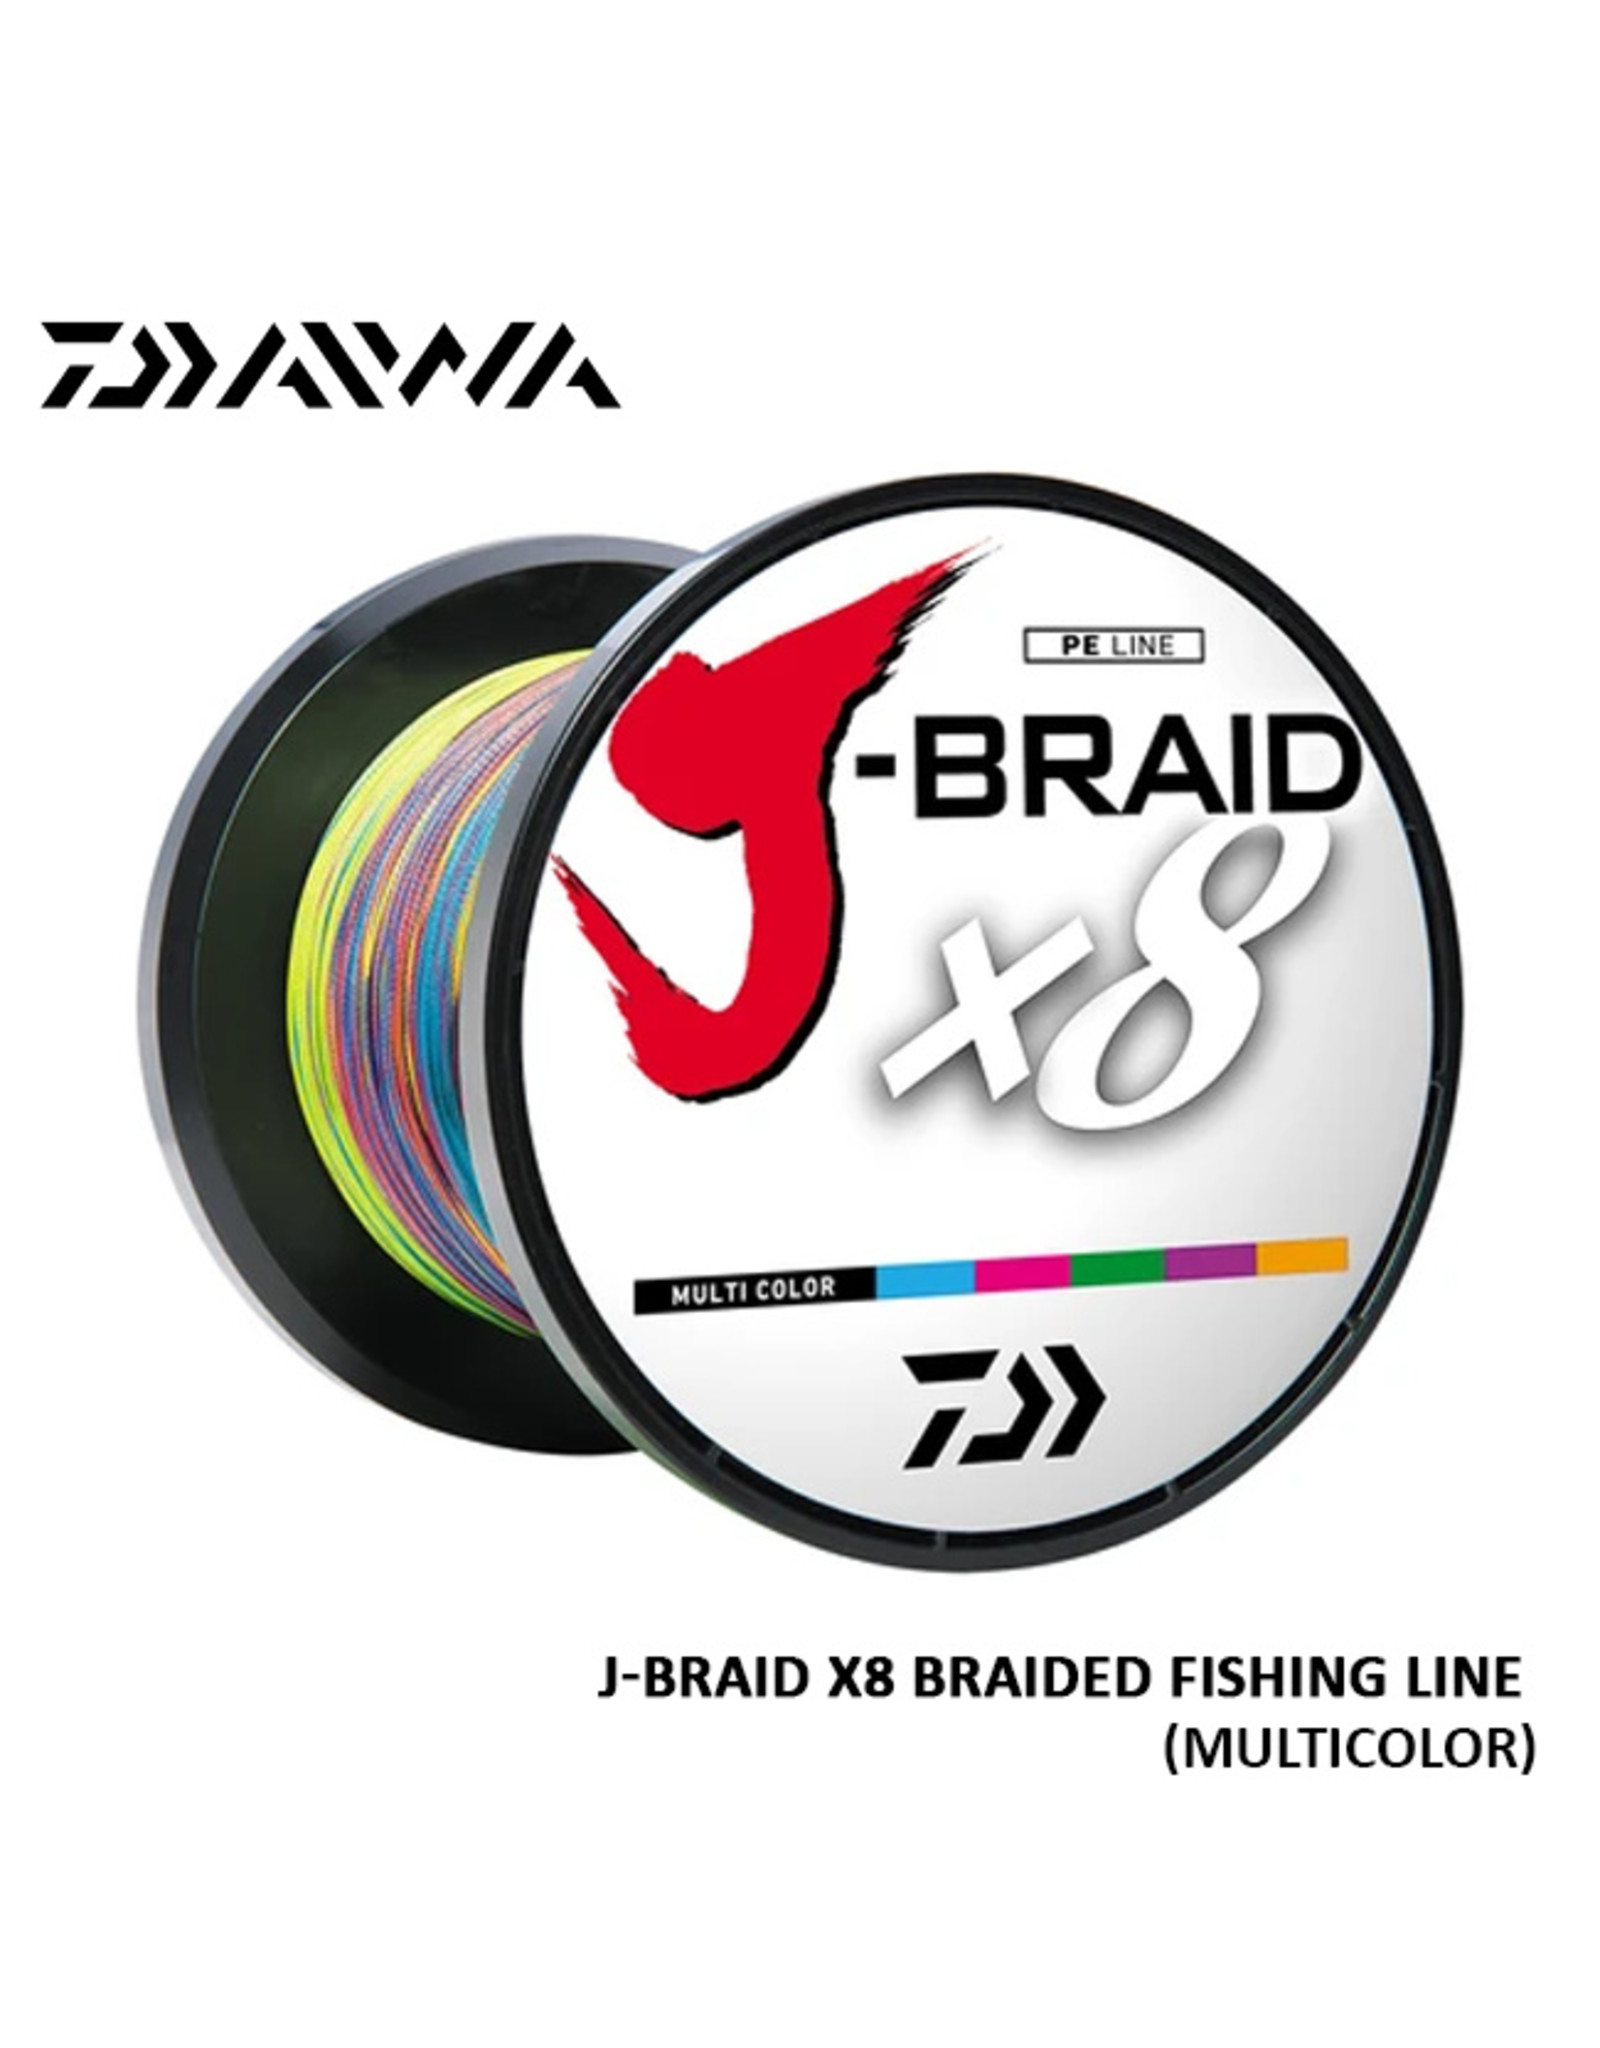 DAIWA (DAI) DAIWA, J-BRAID X8 FISHING LINE 500METER/MULTICOLOR 65#